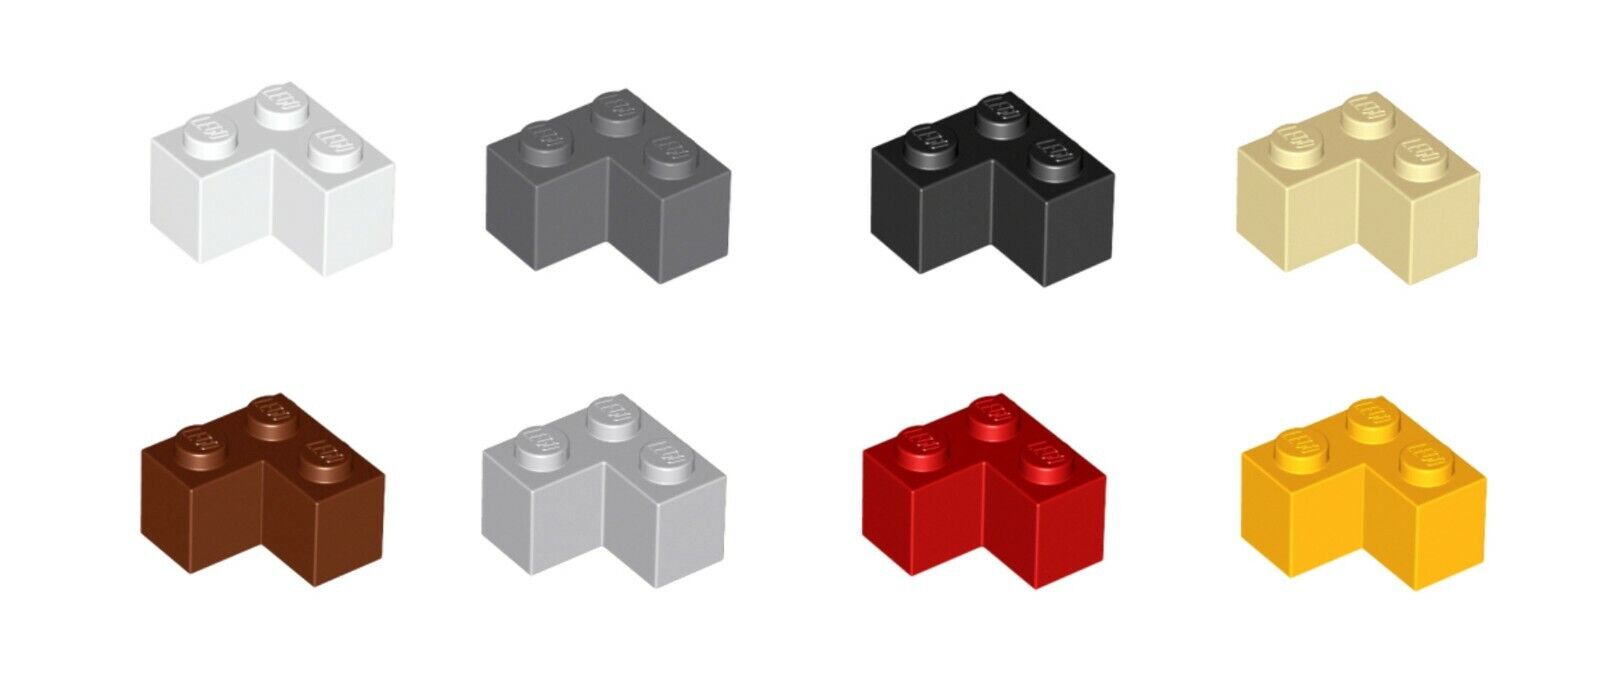 Lego Brick 2 x 2 Corner Lot Parts Pieces Building Blocks ALL COLORS